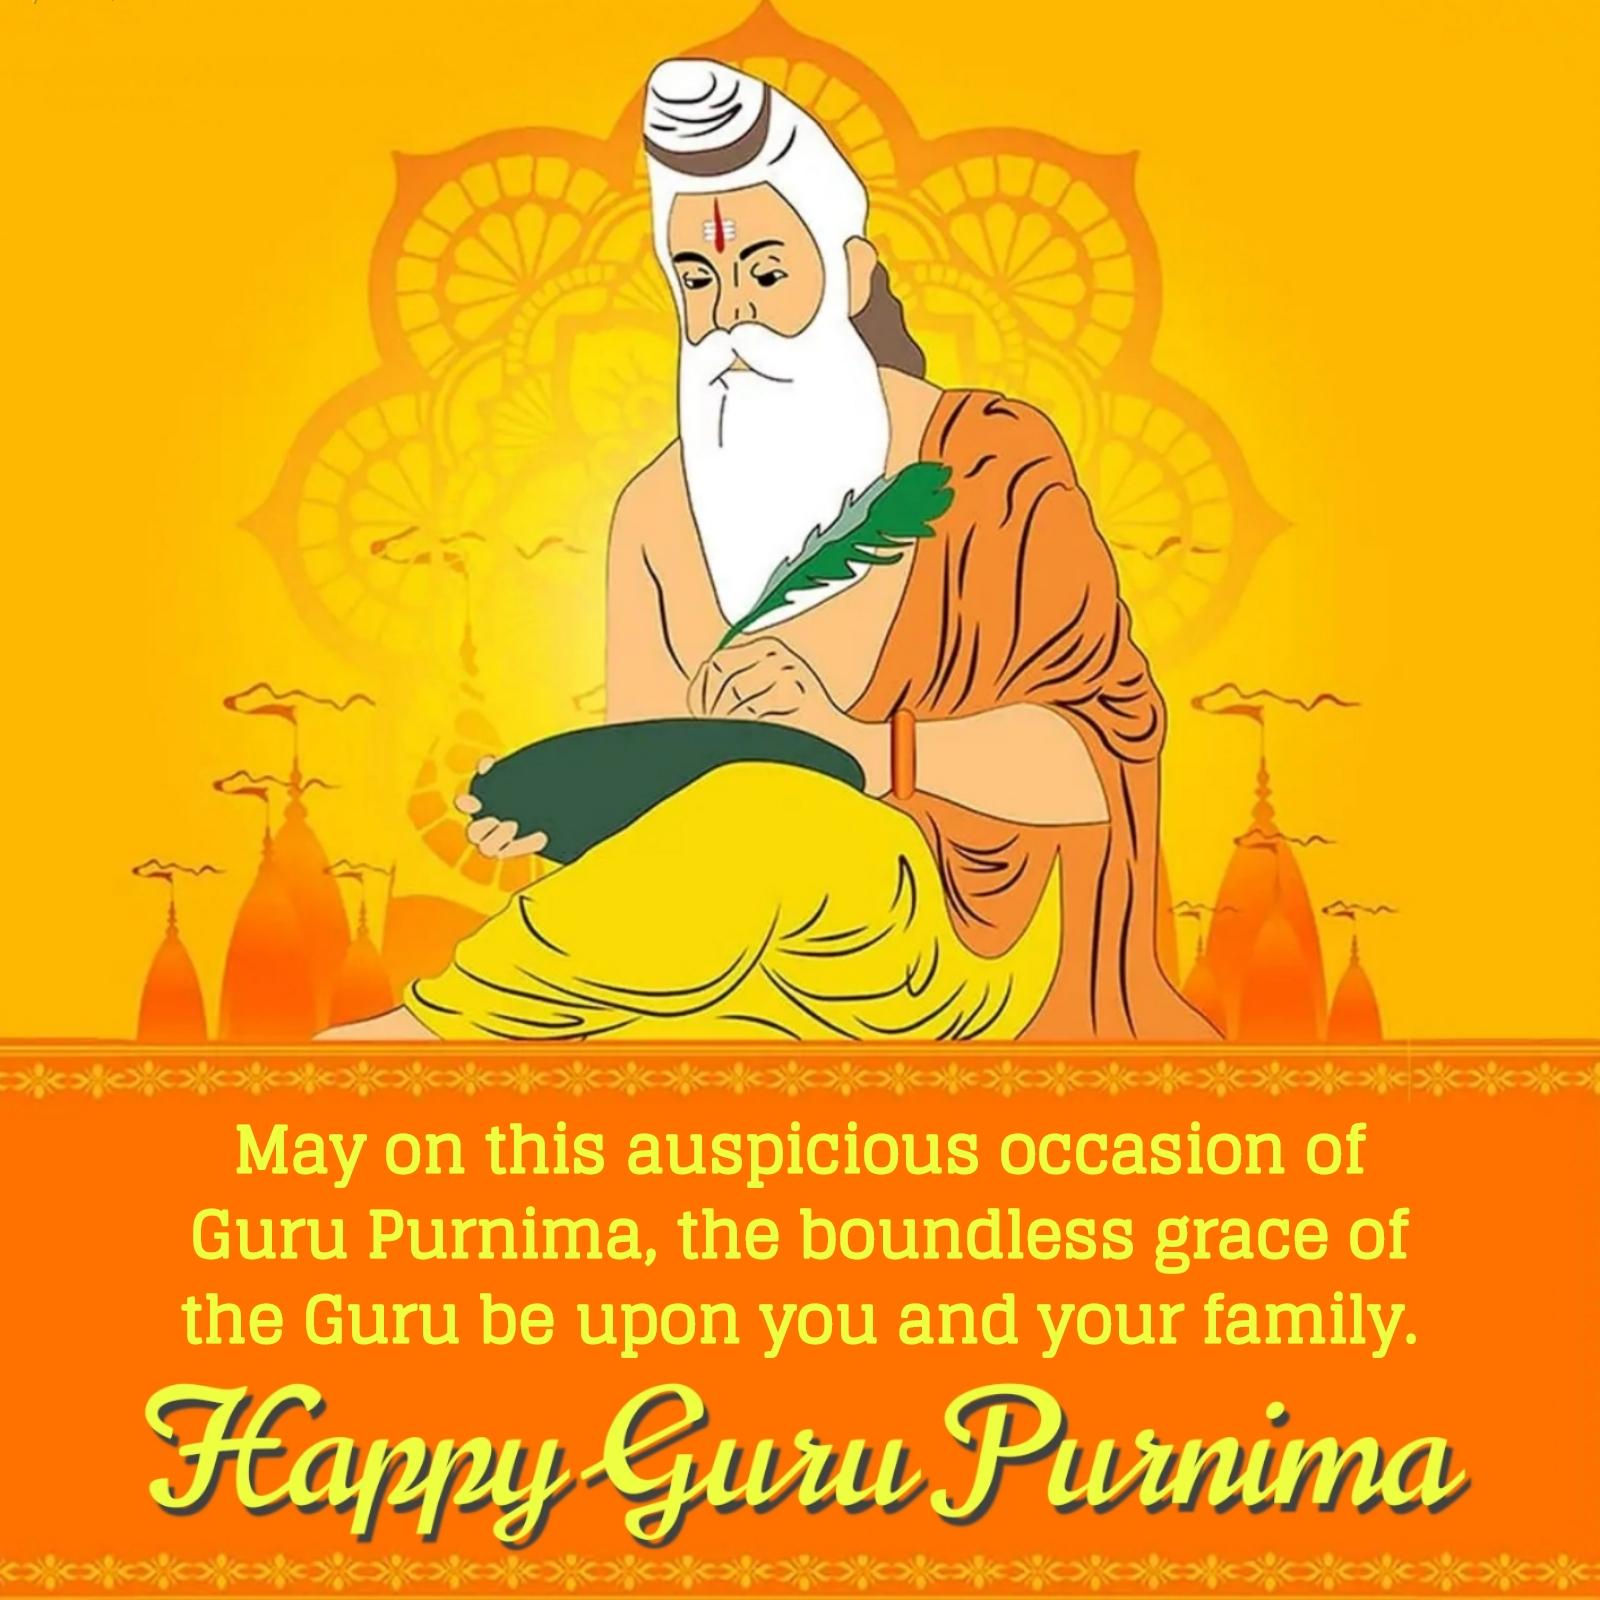 May on this auspicious occasion of Guru Purnima